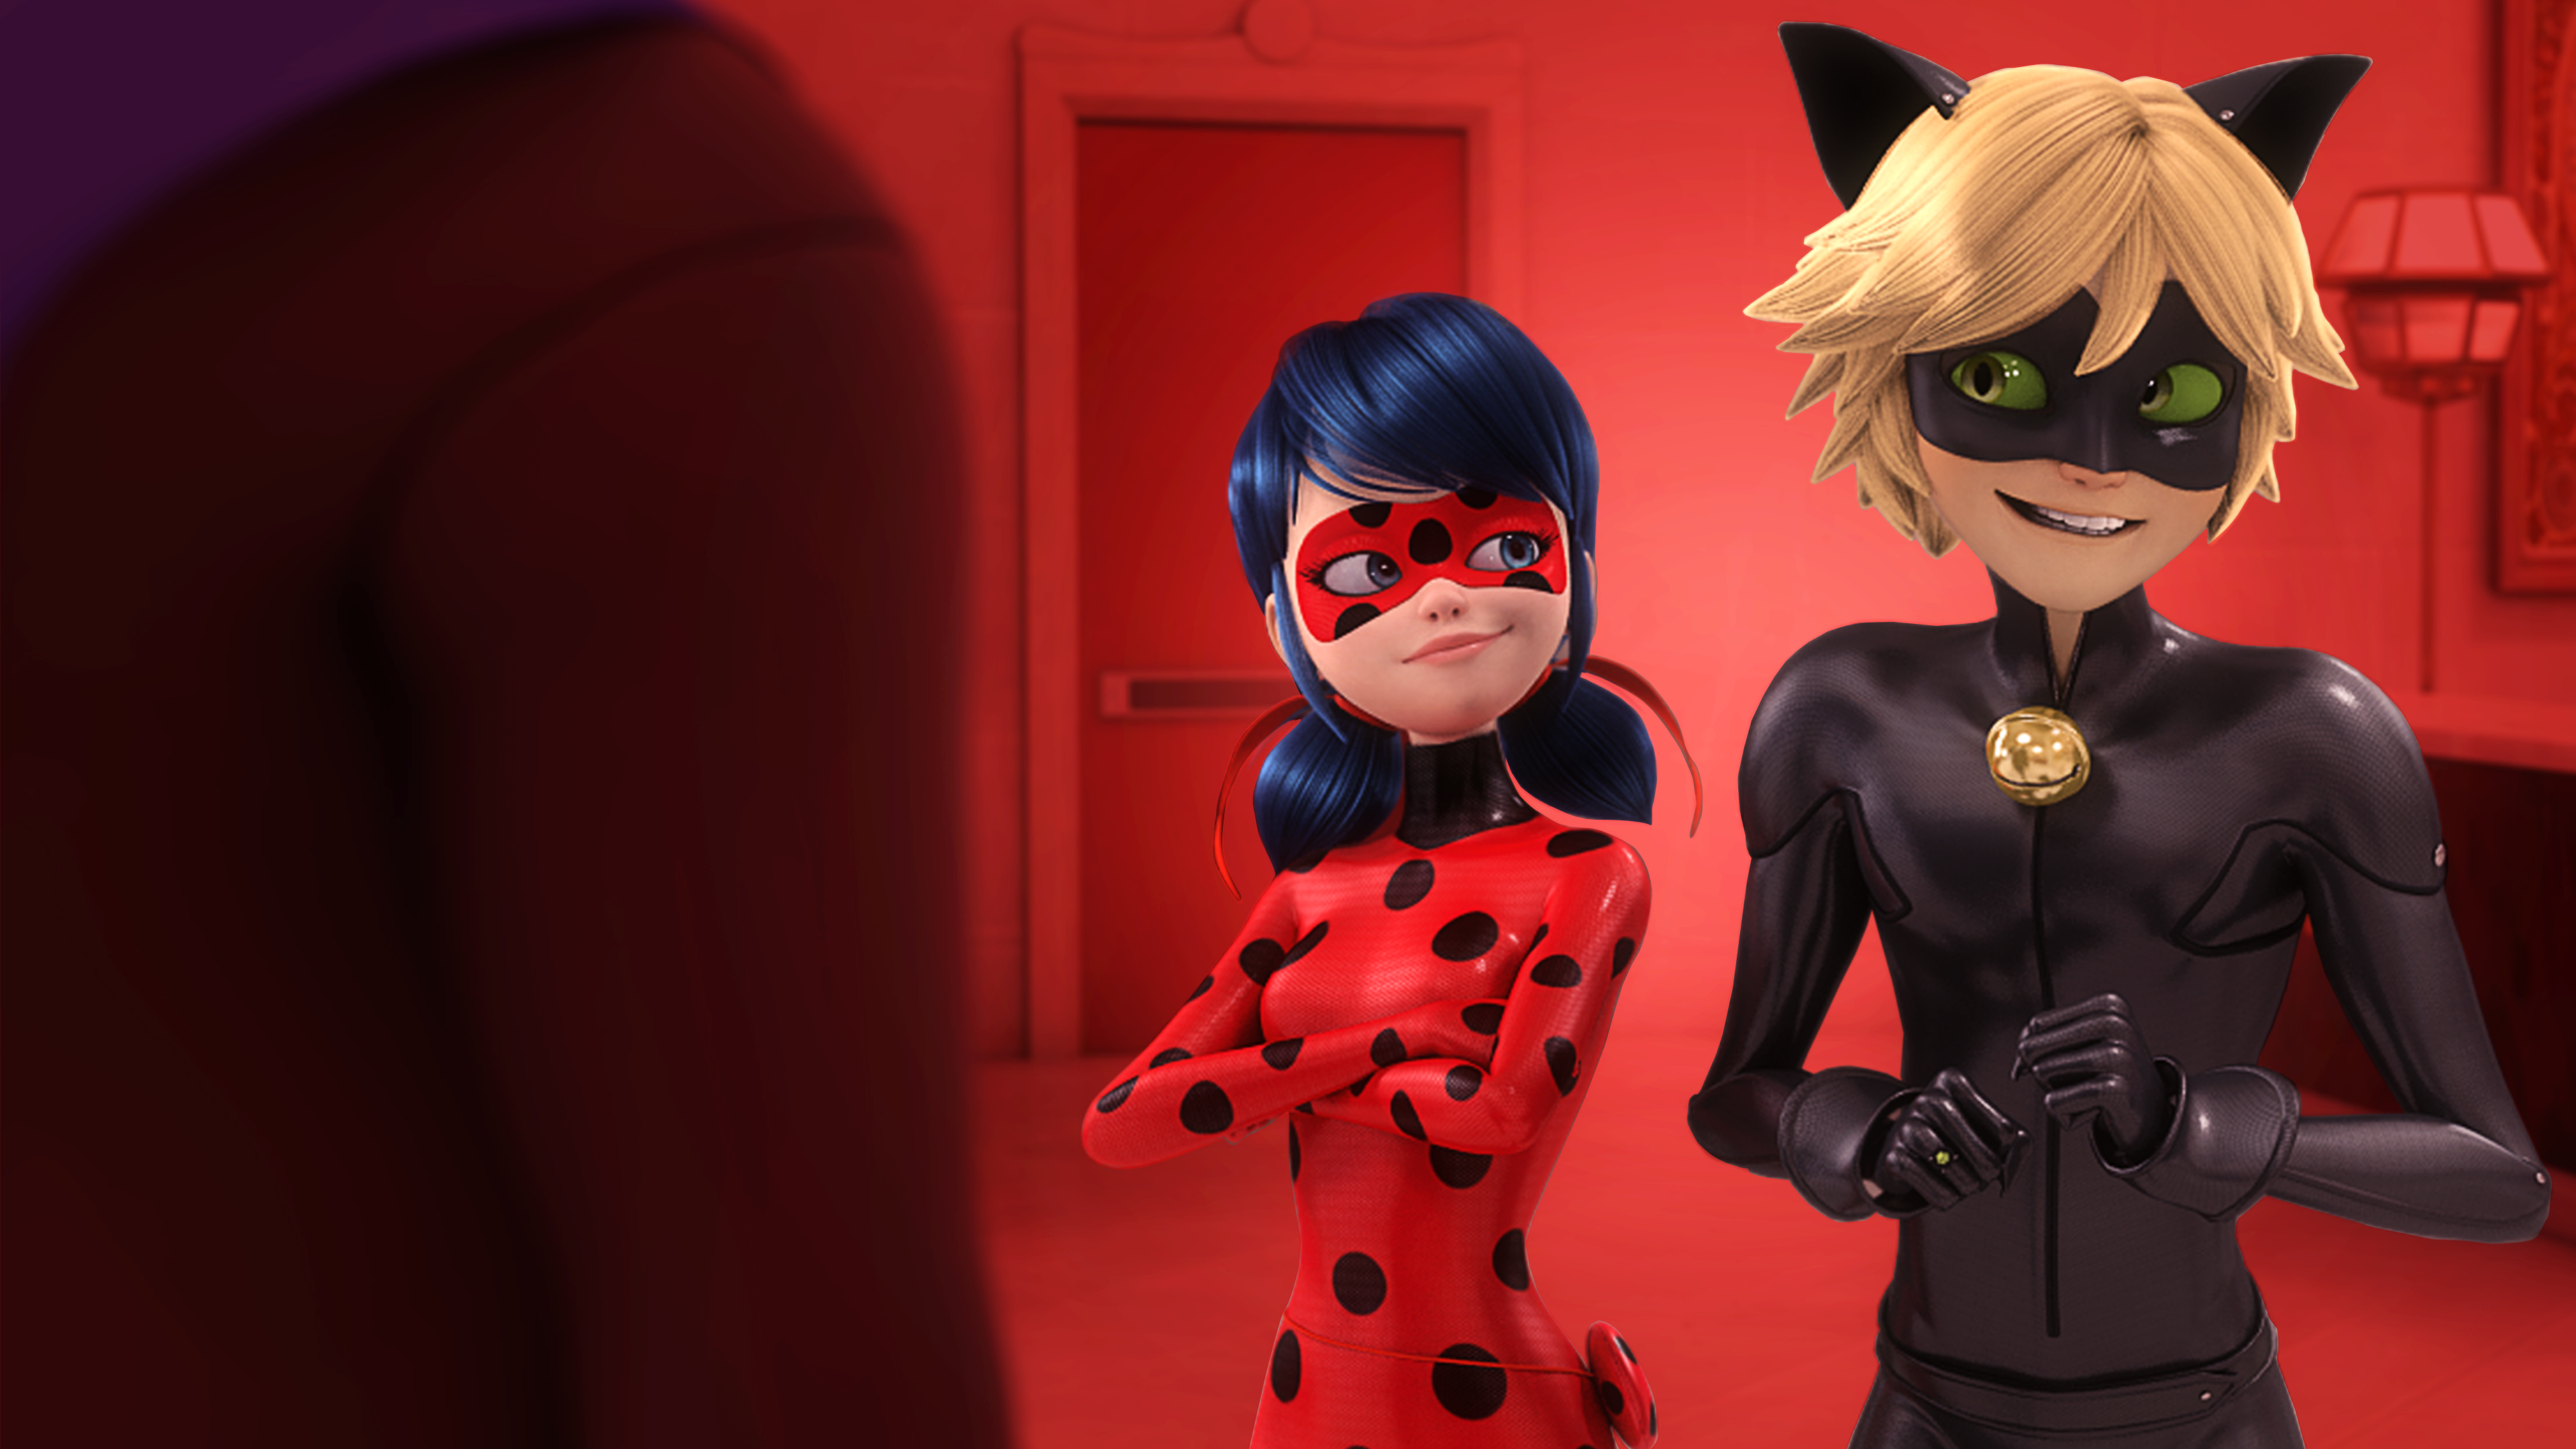 Ladybug & Chat Noir, Miraculous Ladybug S2, Frightningale